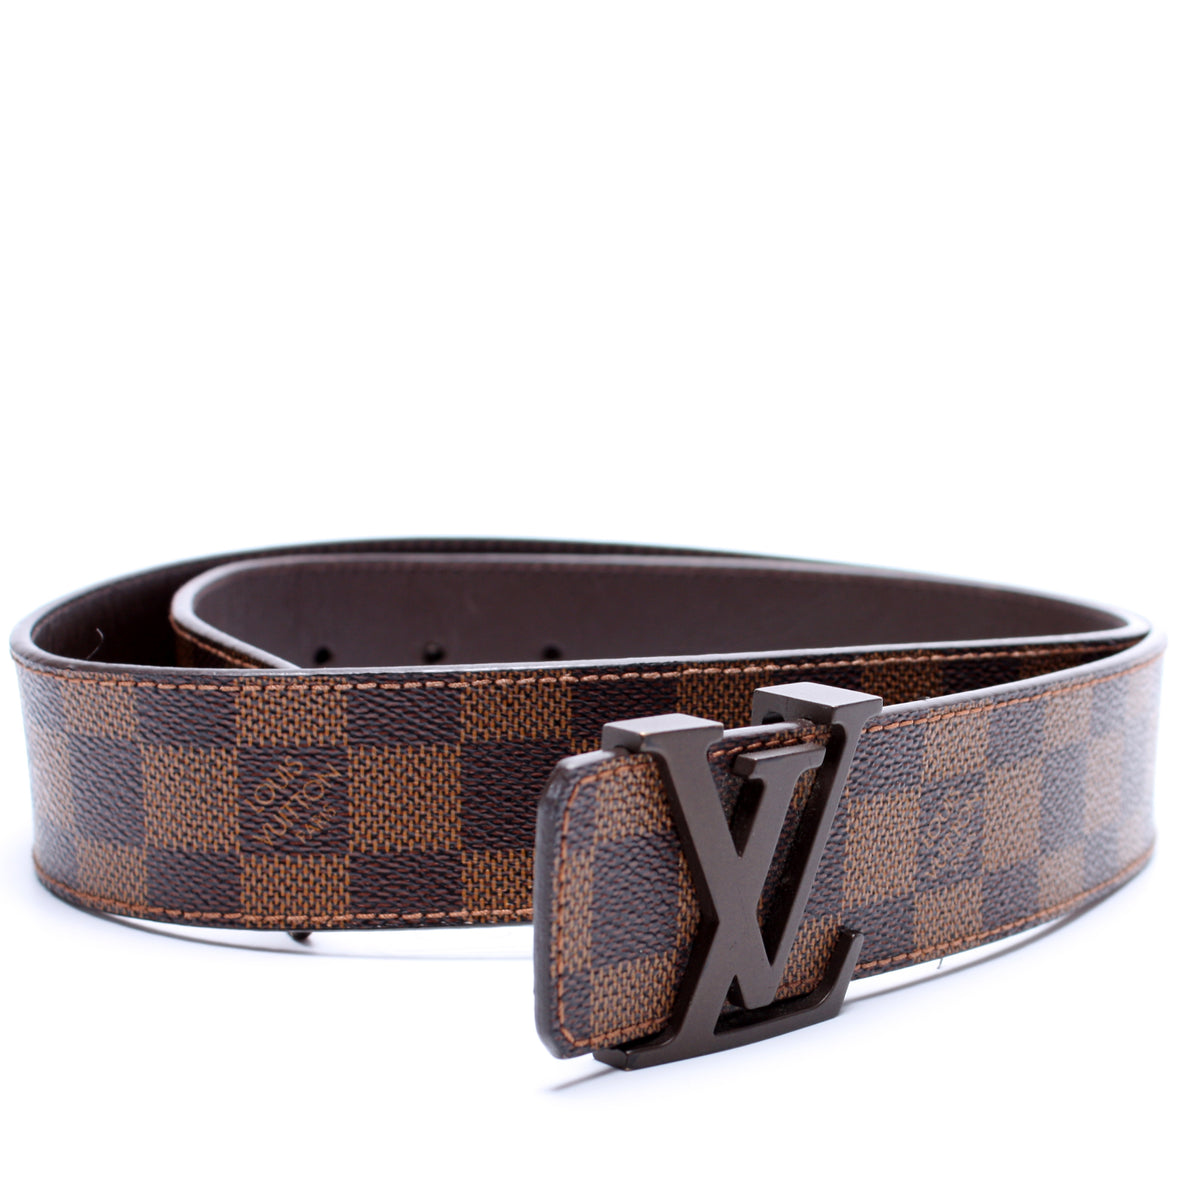 Louis Vuitton Initiales 40mm Epi Leather Black Belt Size 95 38